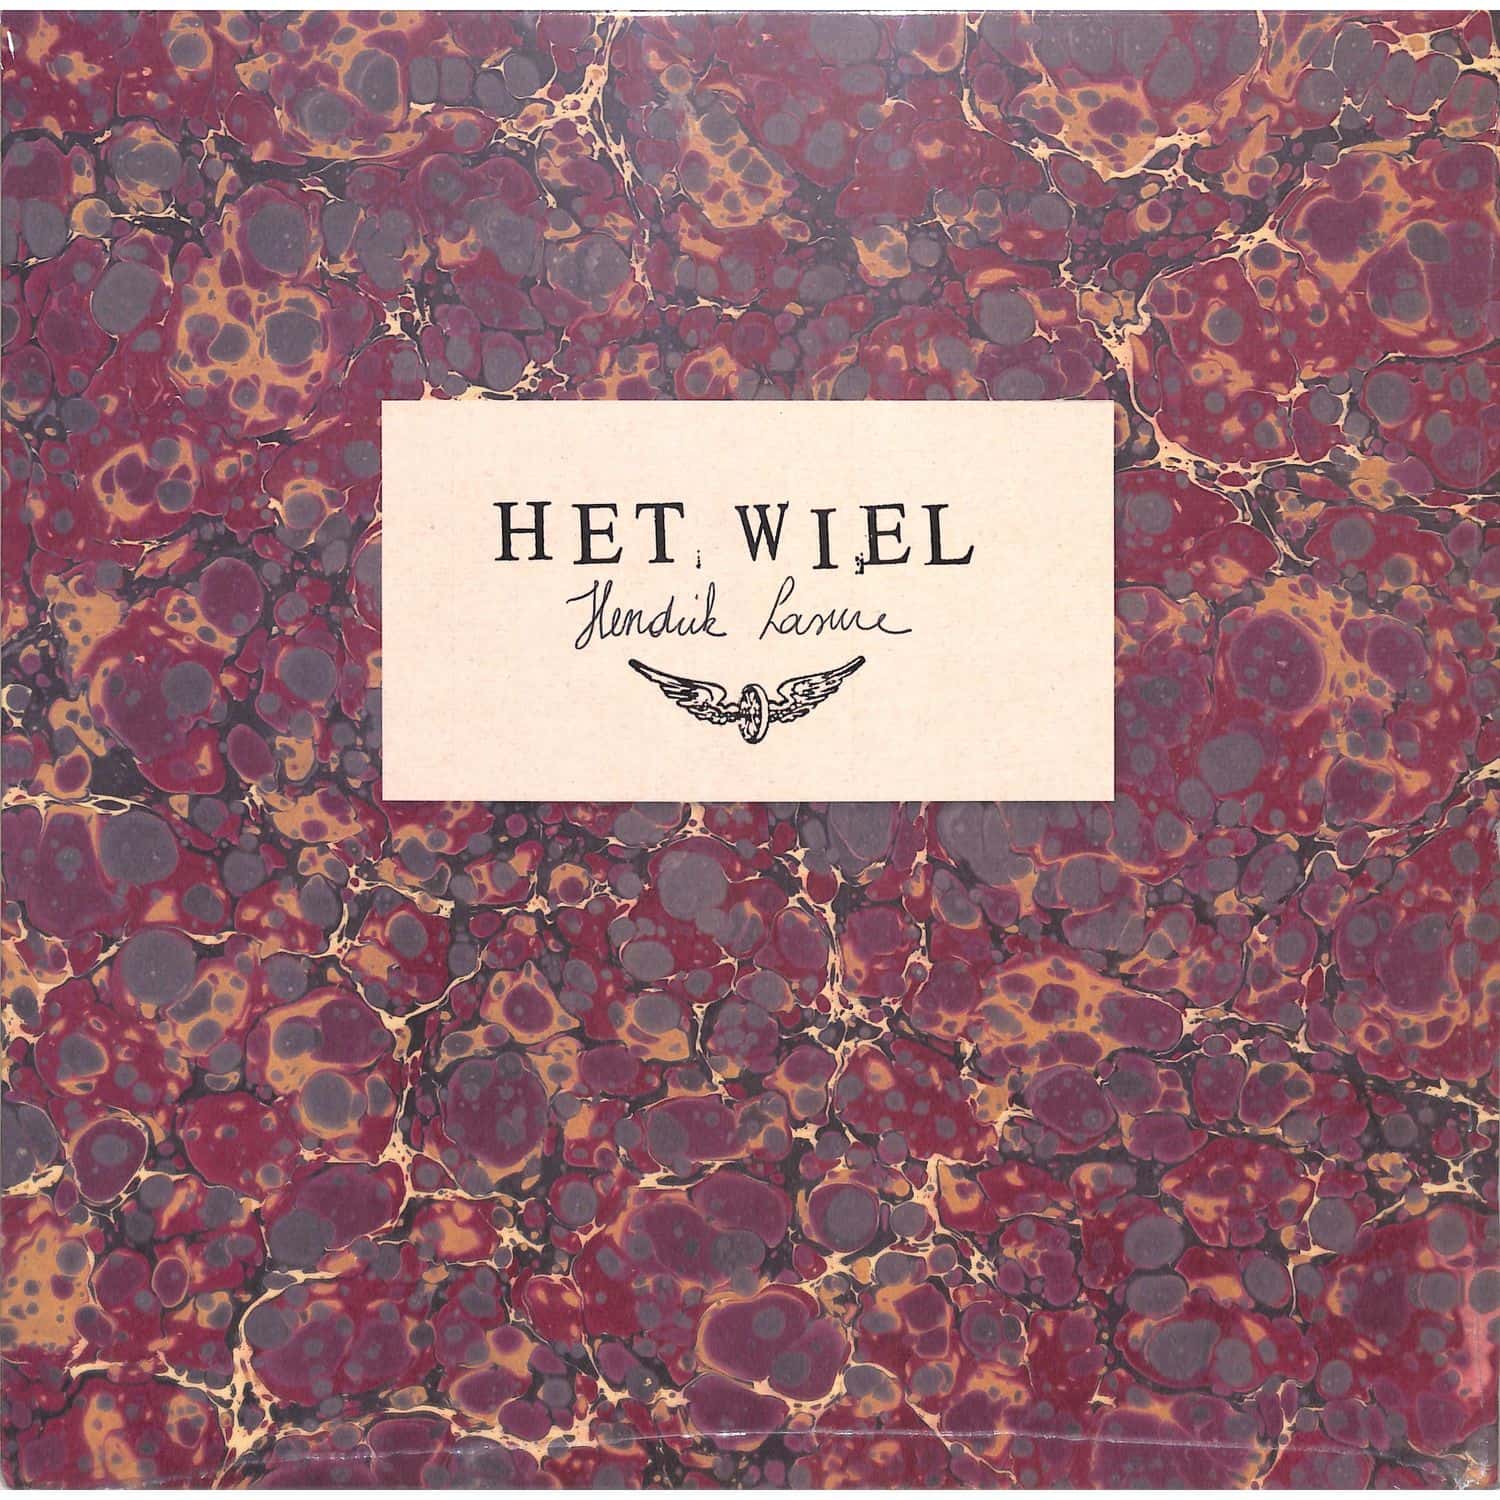 Hendrik Lasure - HET WIEL 